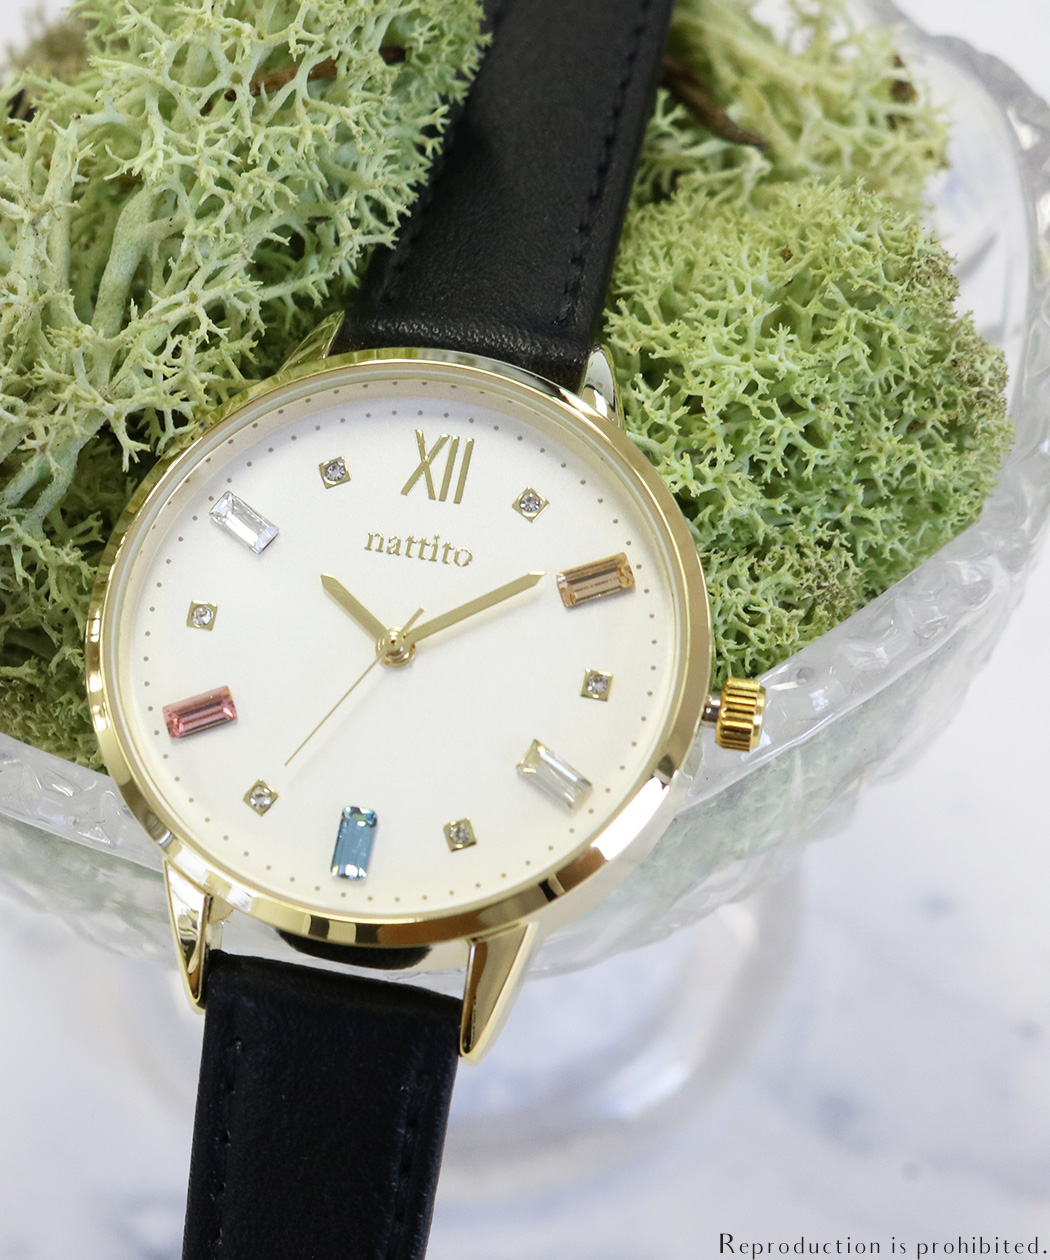 【メーカー直営店】腕時計 レディース 革ベルト Swarovski スワロフスキークリスタル ビジュー フィールドワーク ST227